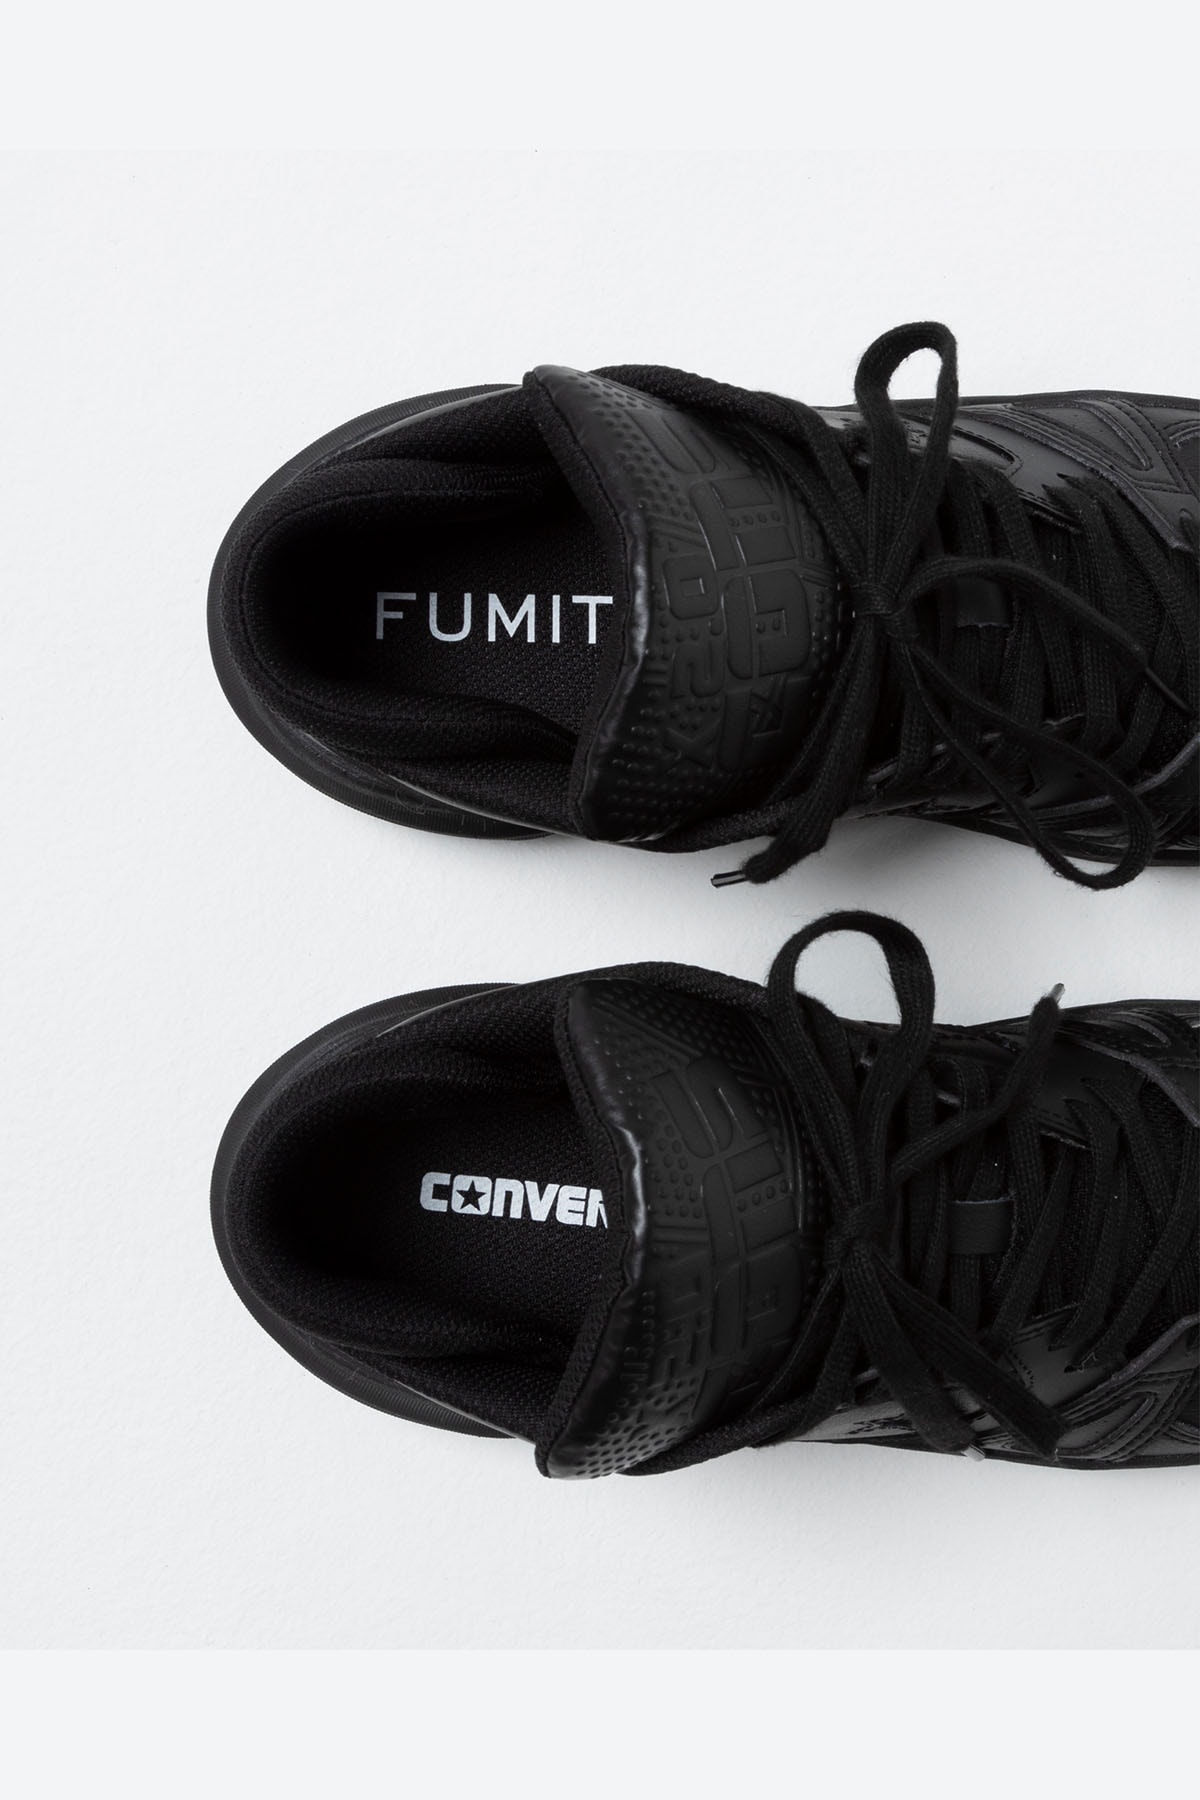 フミト ガンリュウ x コンバースによるコラボフットウェア第2弾が到着 FUMITO GANRYU X CONVERSE collab Baskate shoes release info